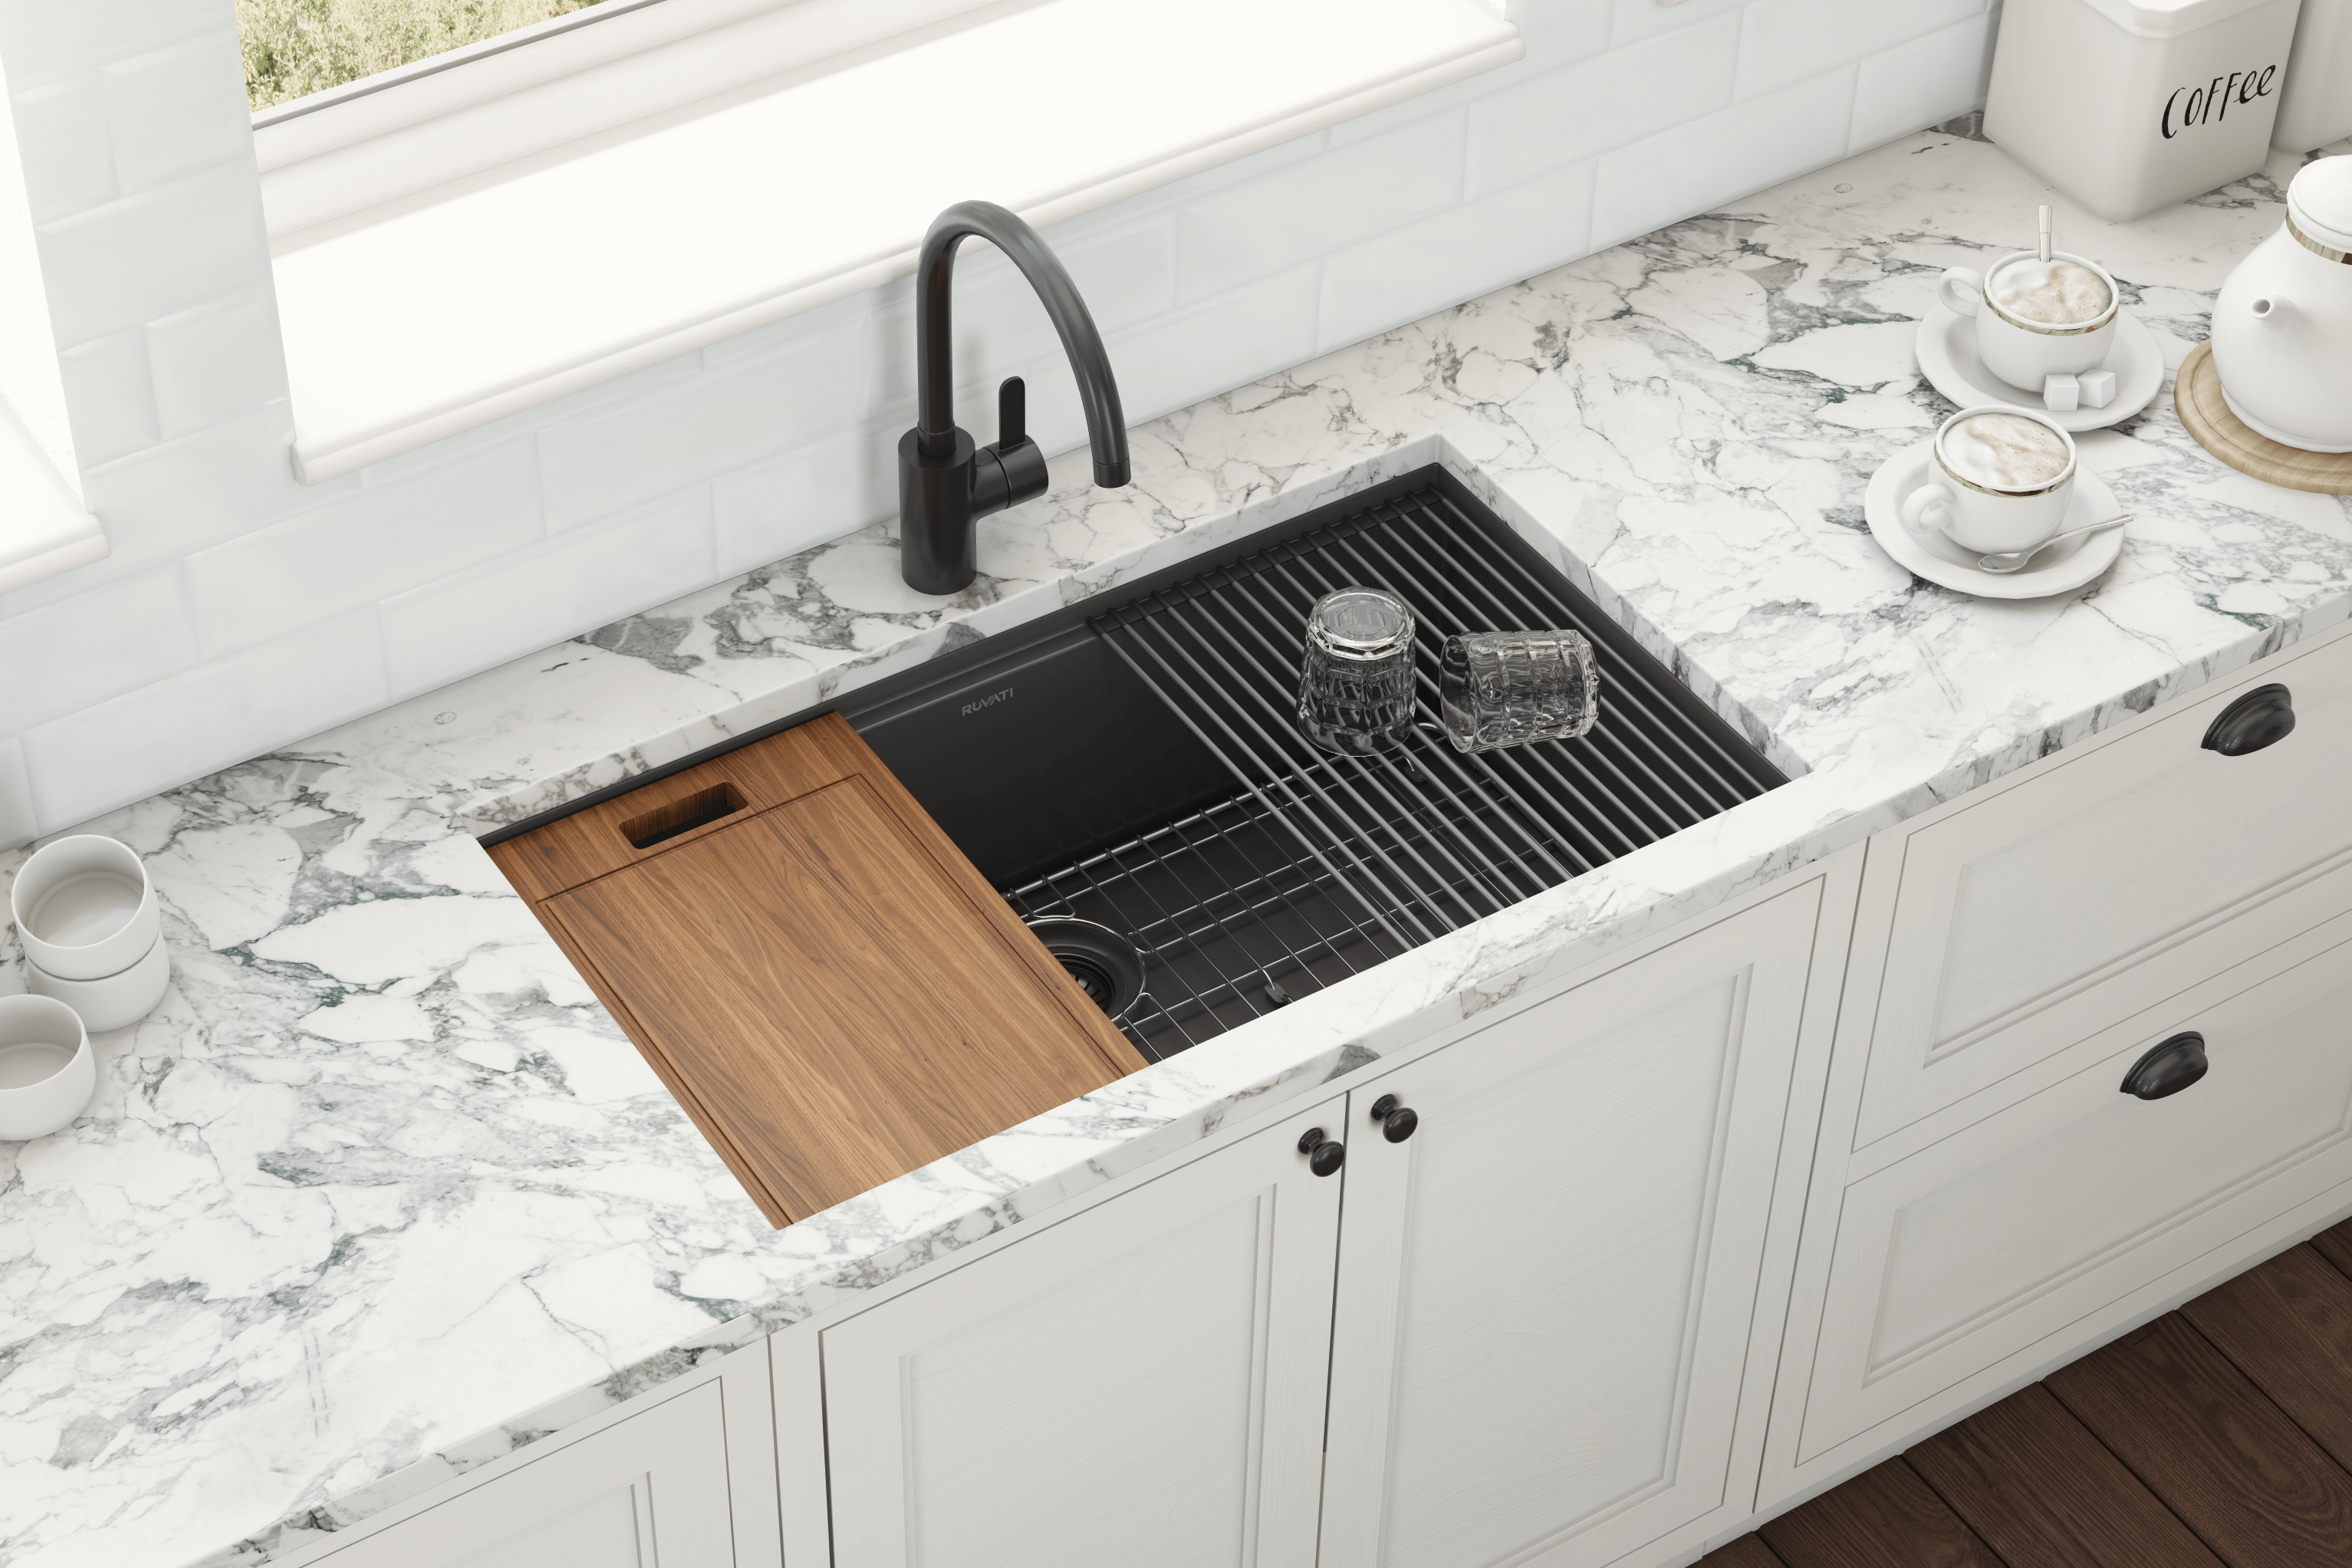  mDesign Durable Silicone Kitchen Sink Storage